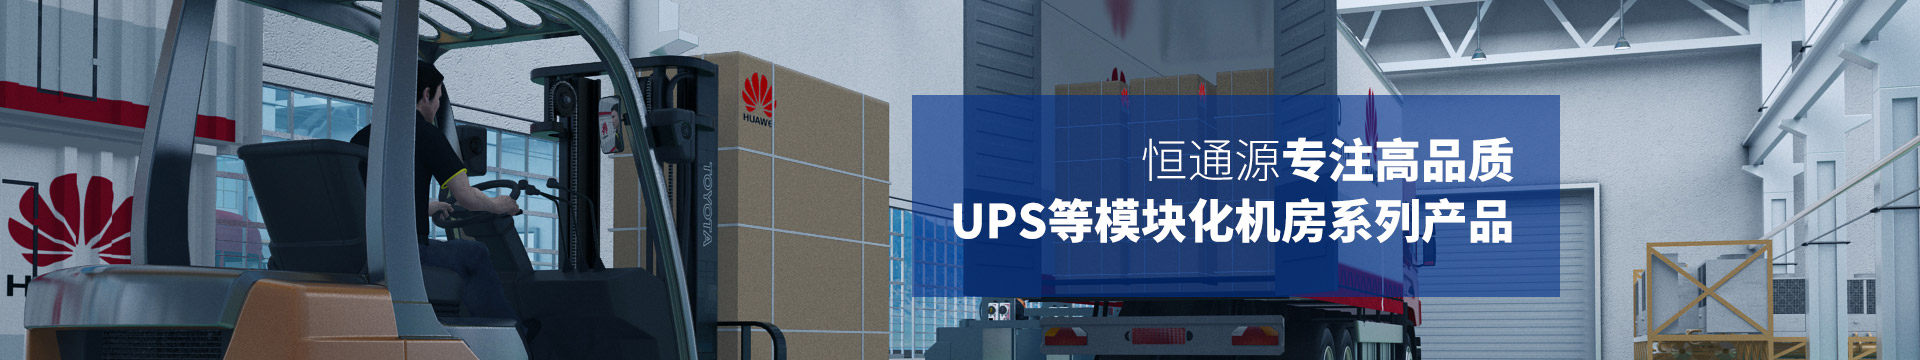 恒通源专注高品质UPS等模块化机房系列产品